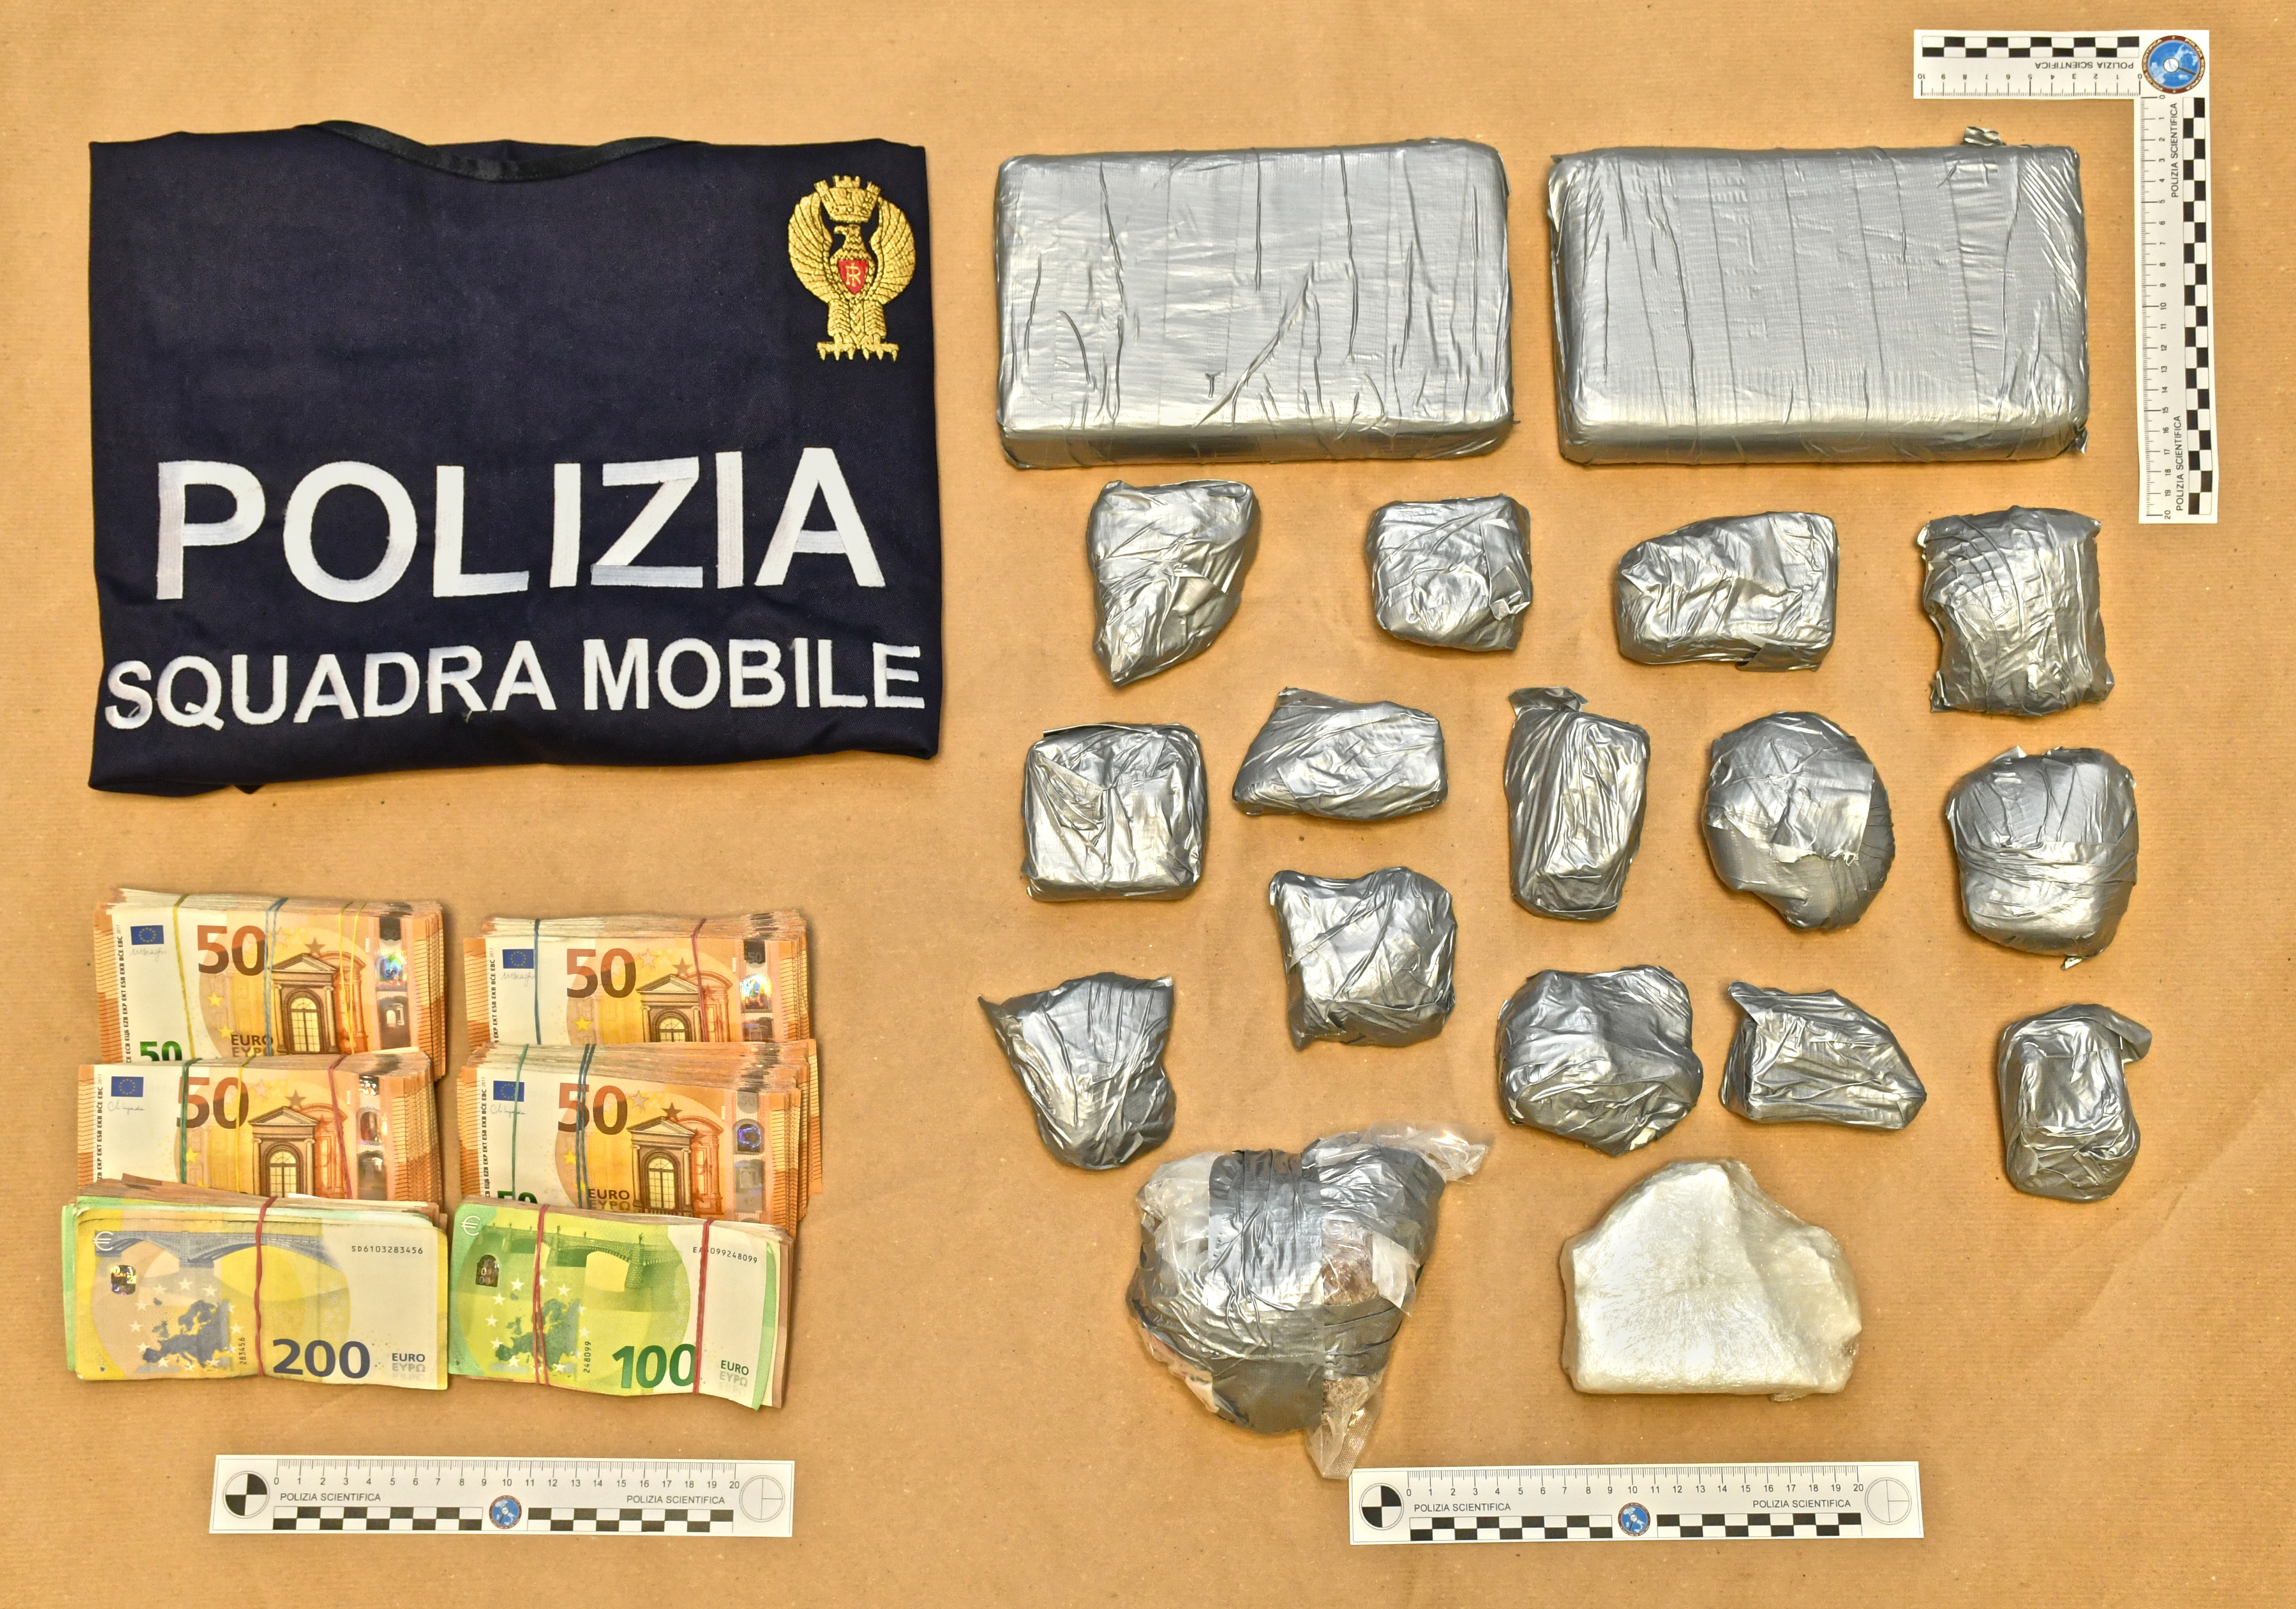 Operazione della Polizia di Stato: oltre 4 kg di cocaina e 55.000 euro in contanti sequestrati dalla Squadra Mobile di Rovigo, un uomo arrestato.